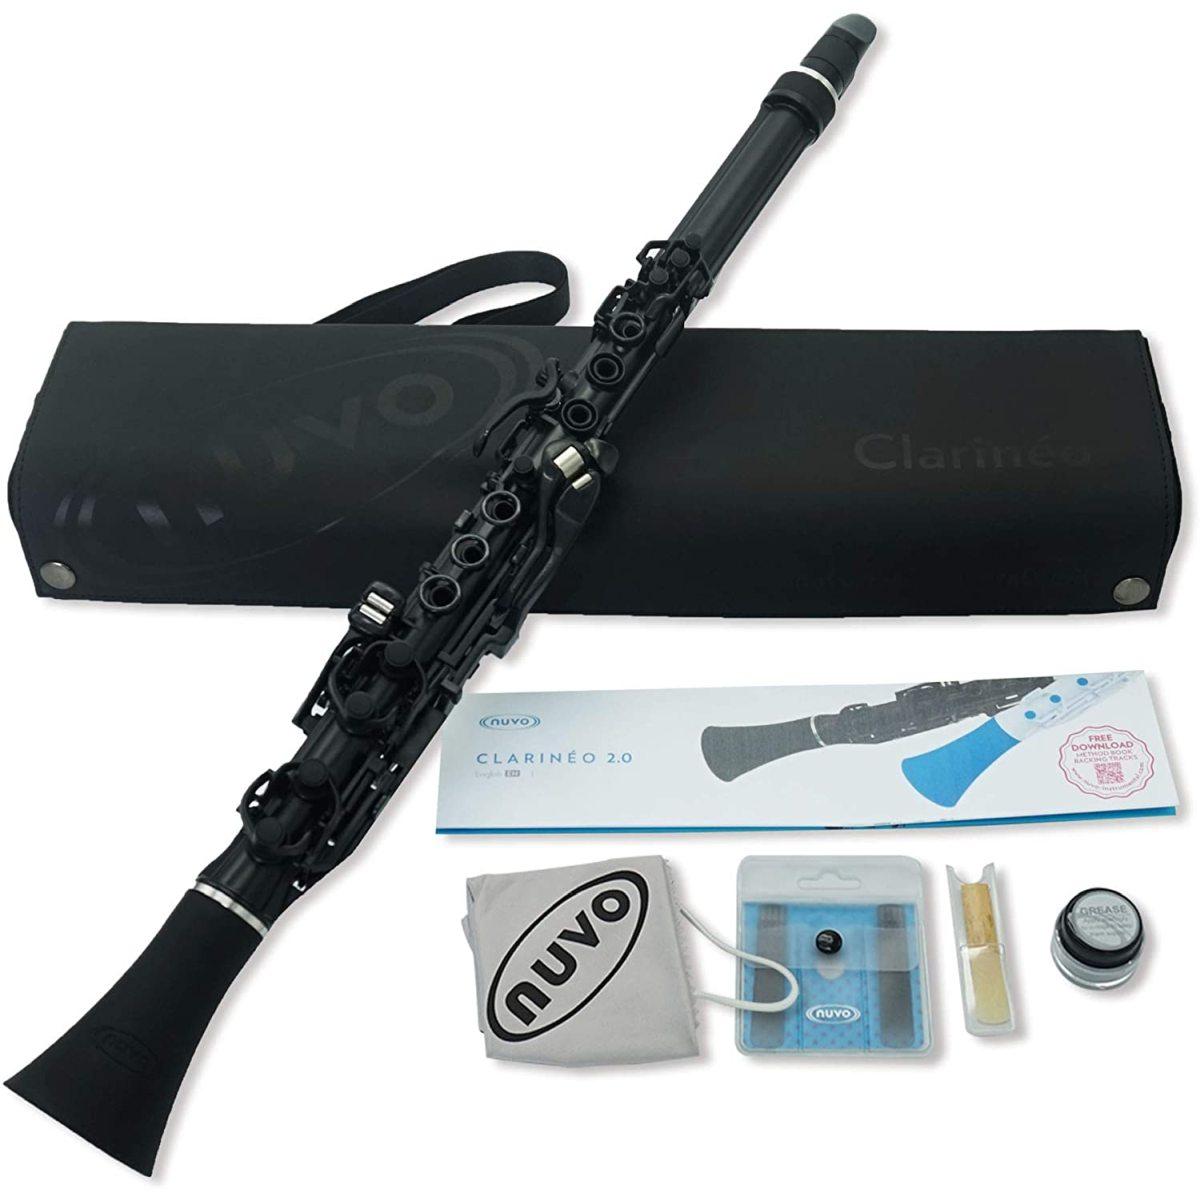 Nuvo Clarineo clarinetto in do in plastica